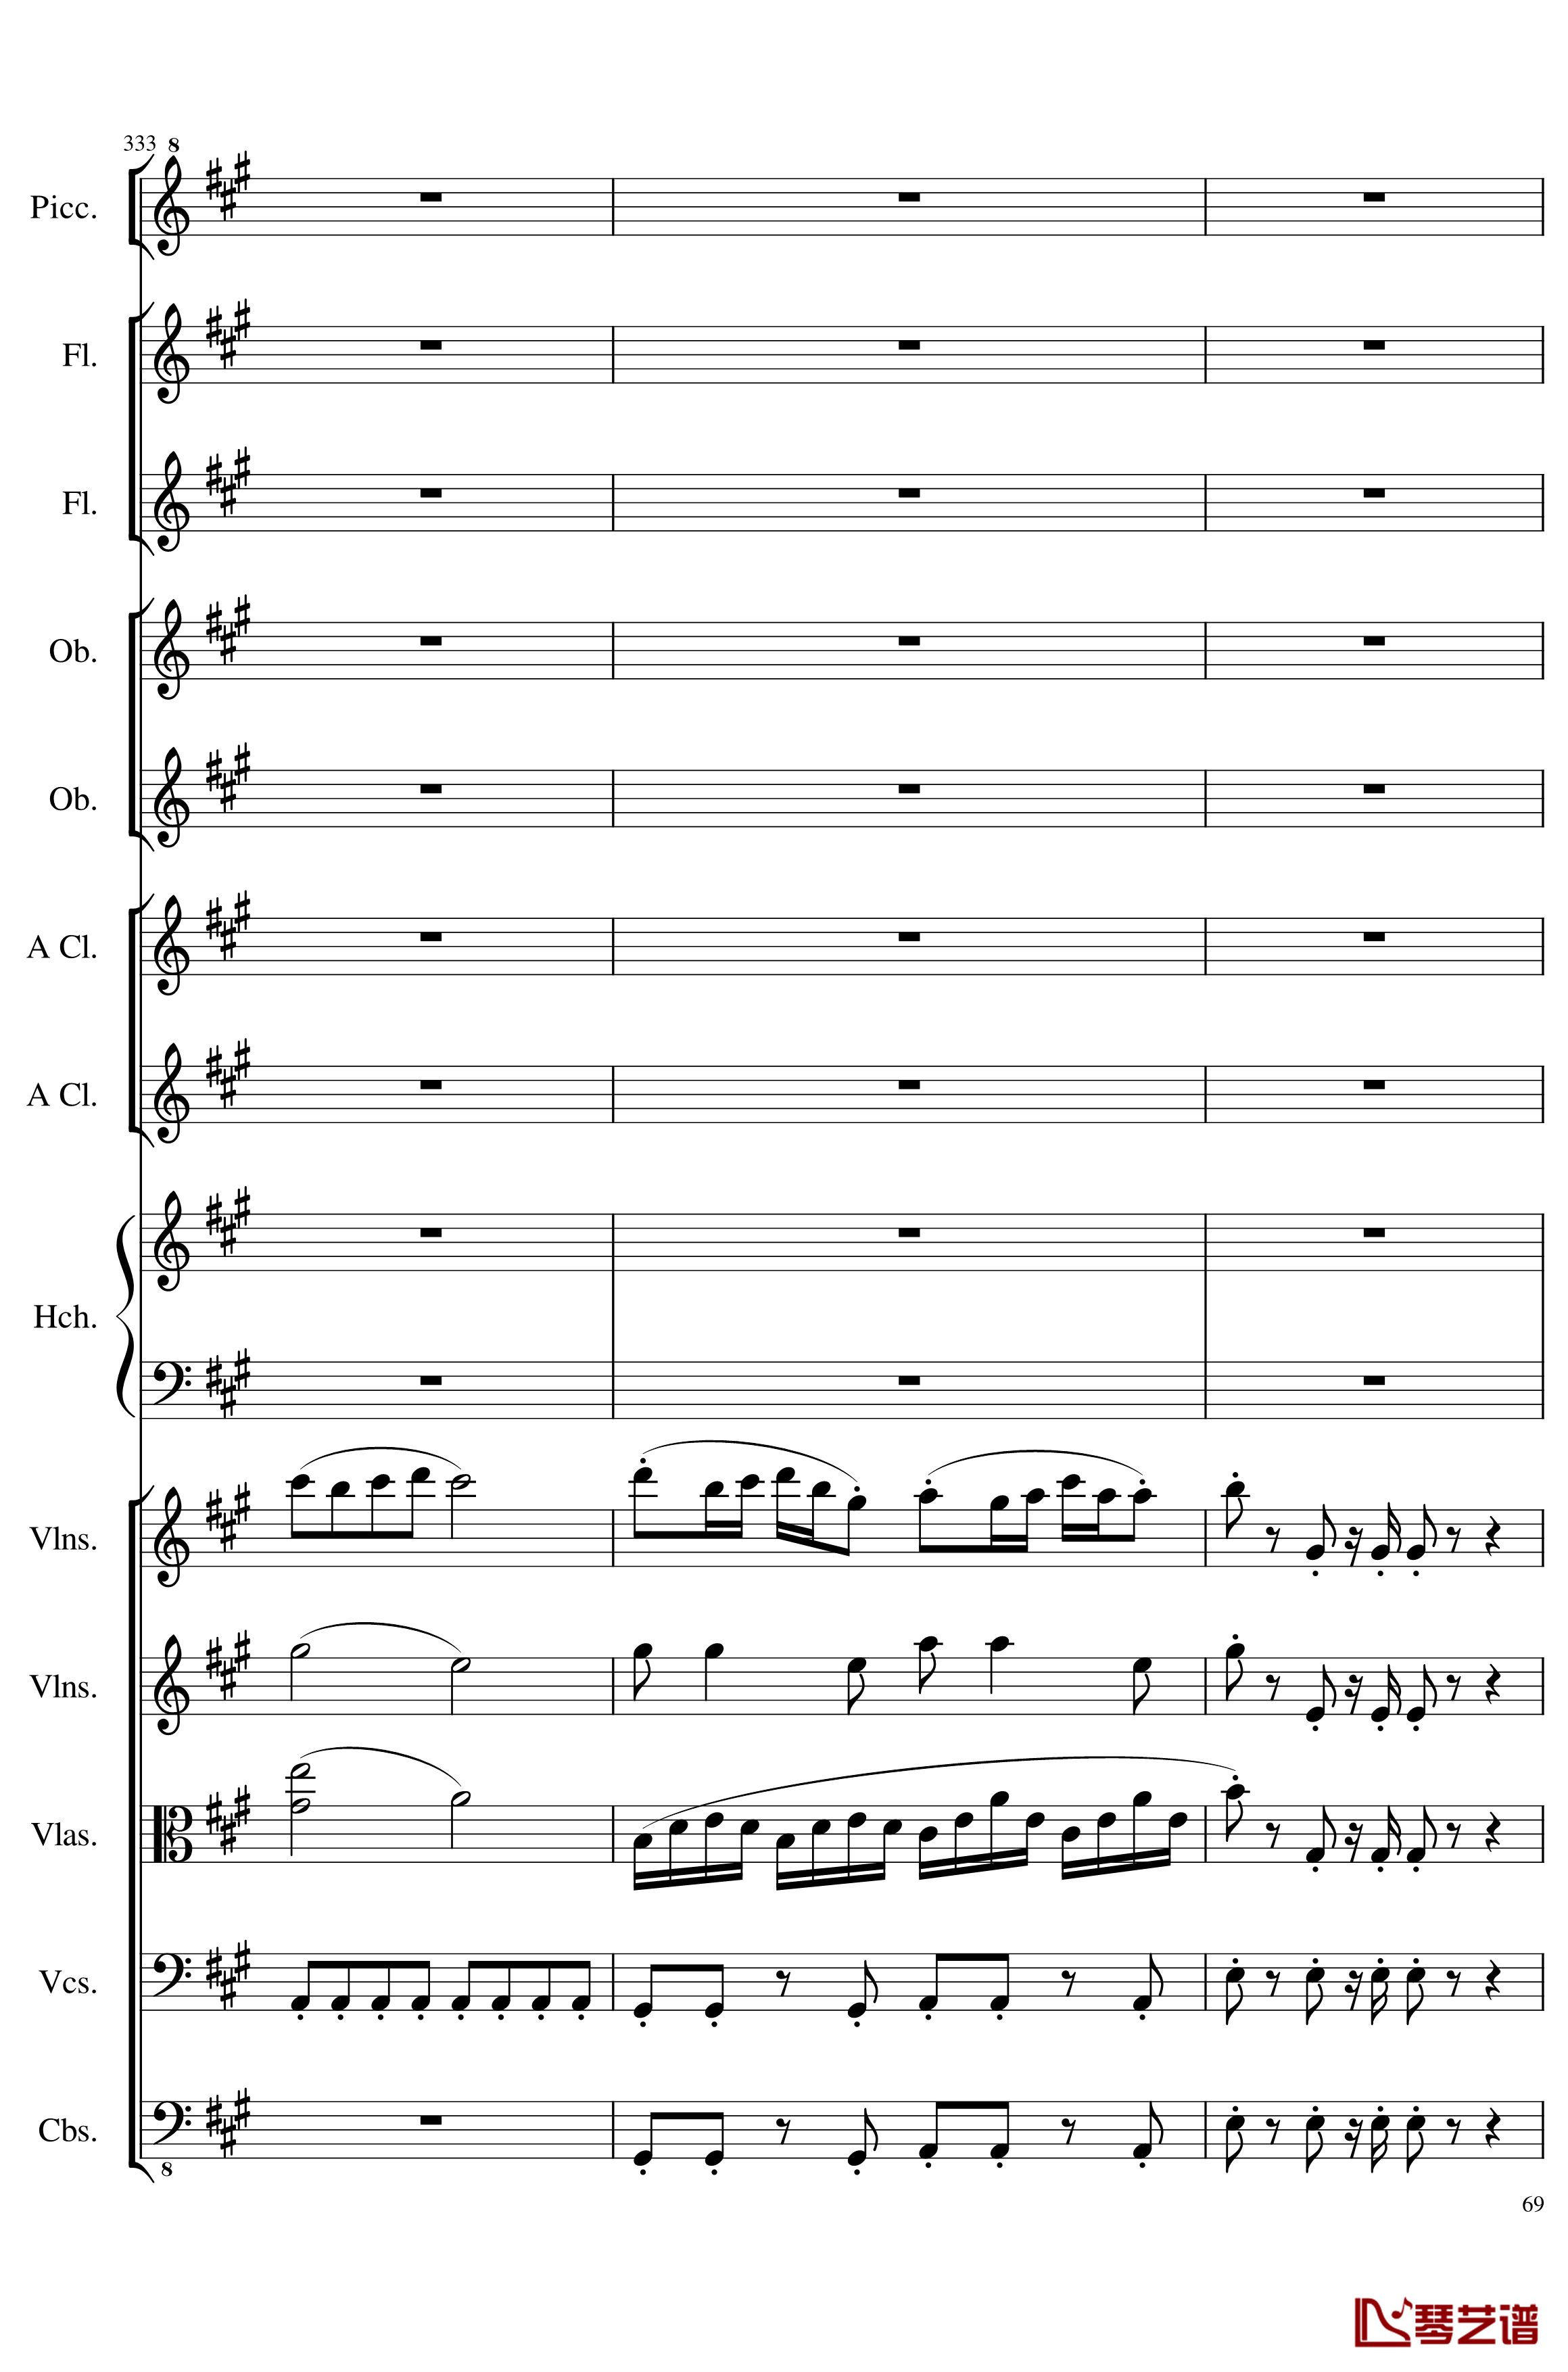 7 Contredanses No.1-7, Op.124钢琴谱-7首乡村舞曲，第一至第七，作品124-一个球69